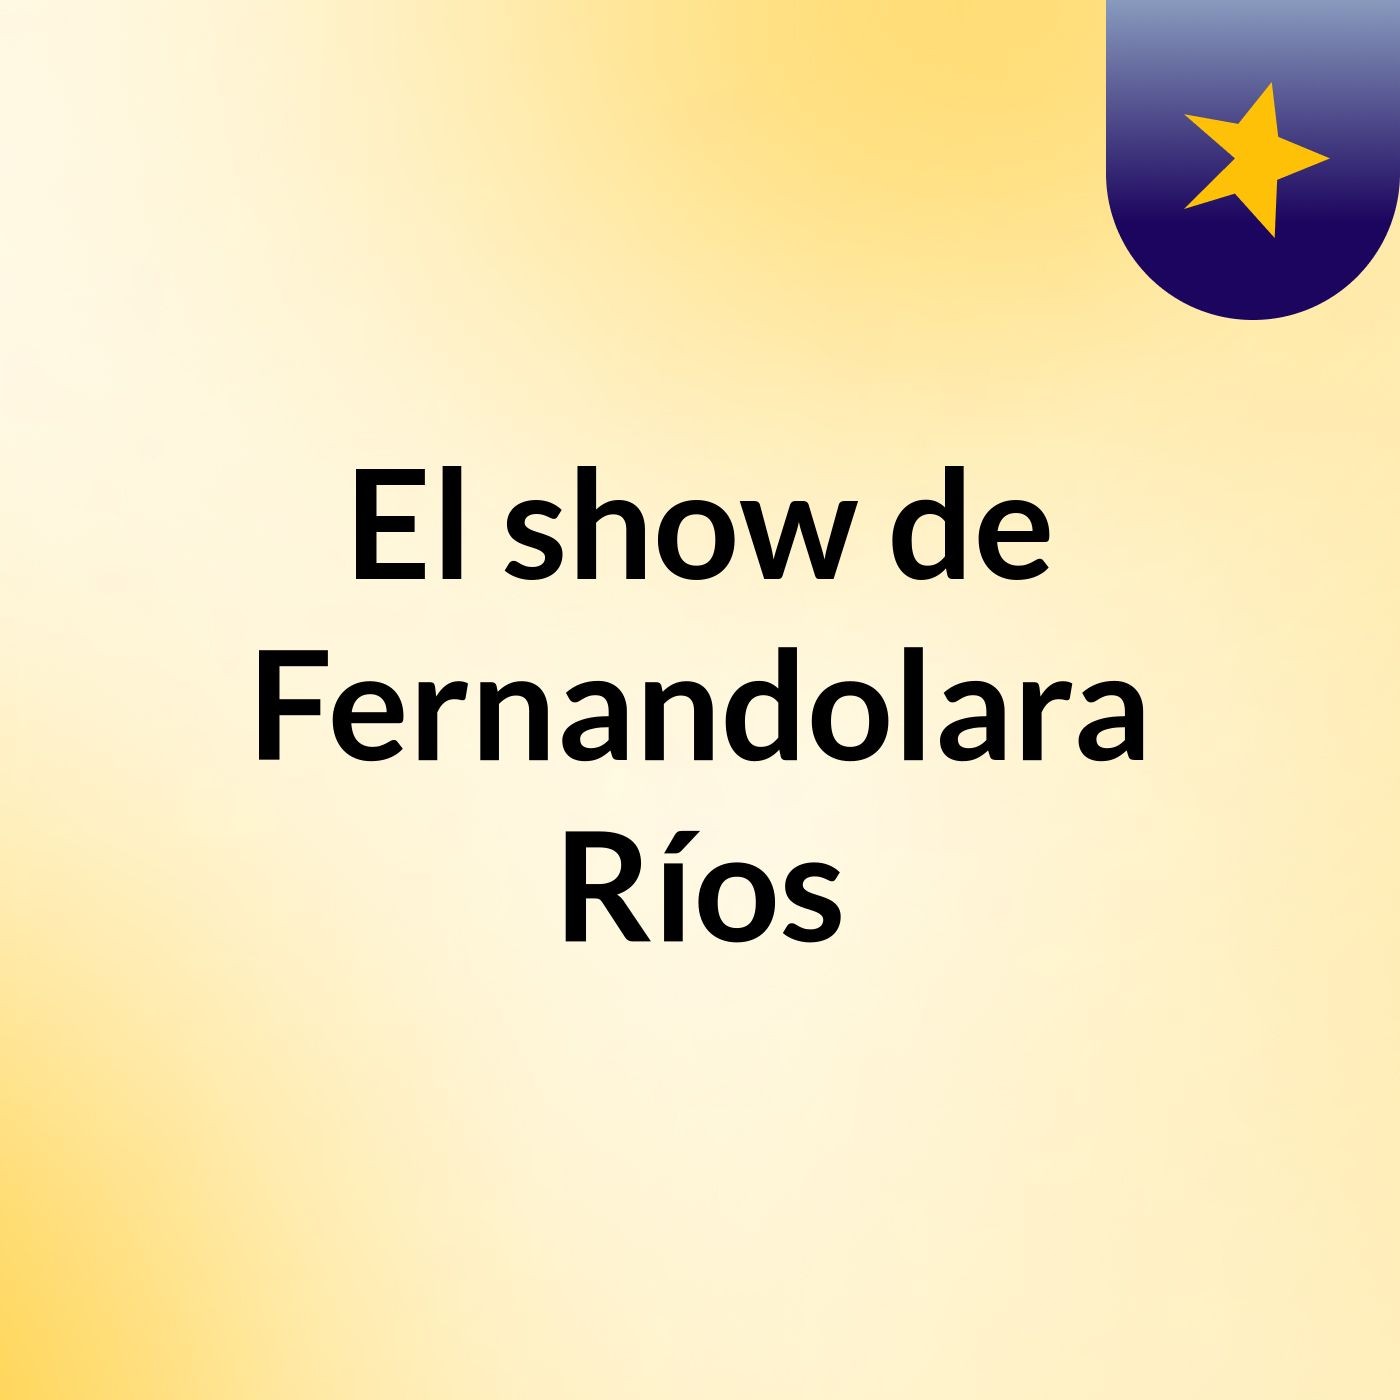 El show de Fernandolara Ríos